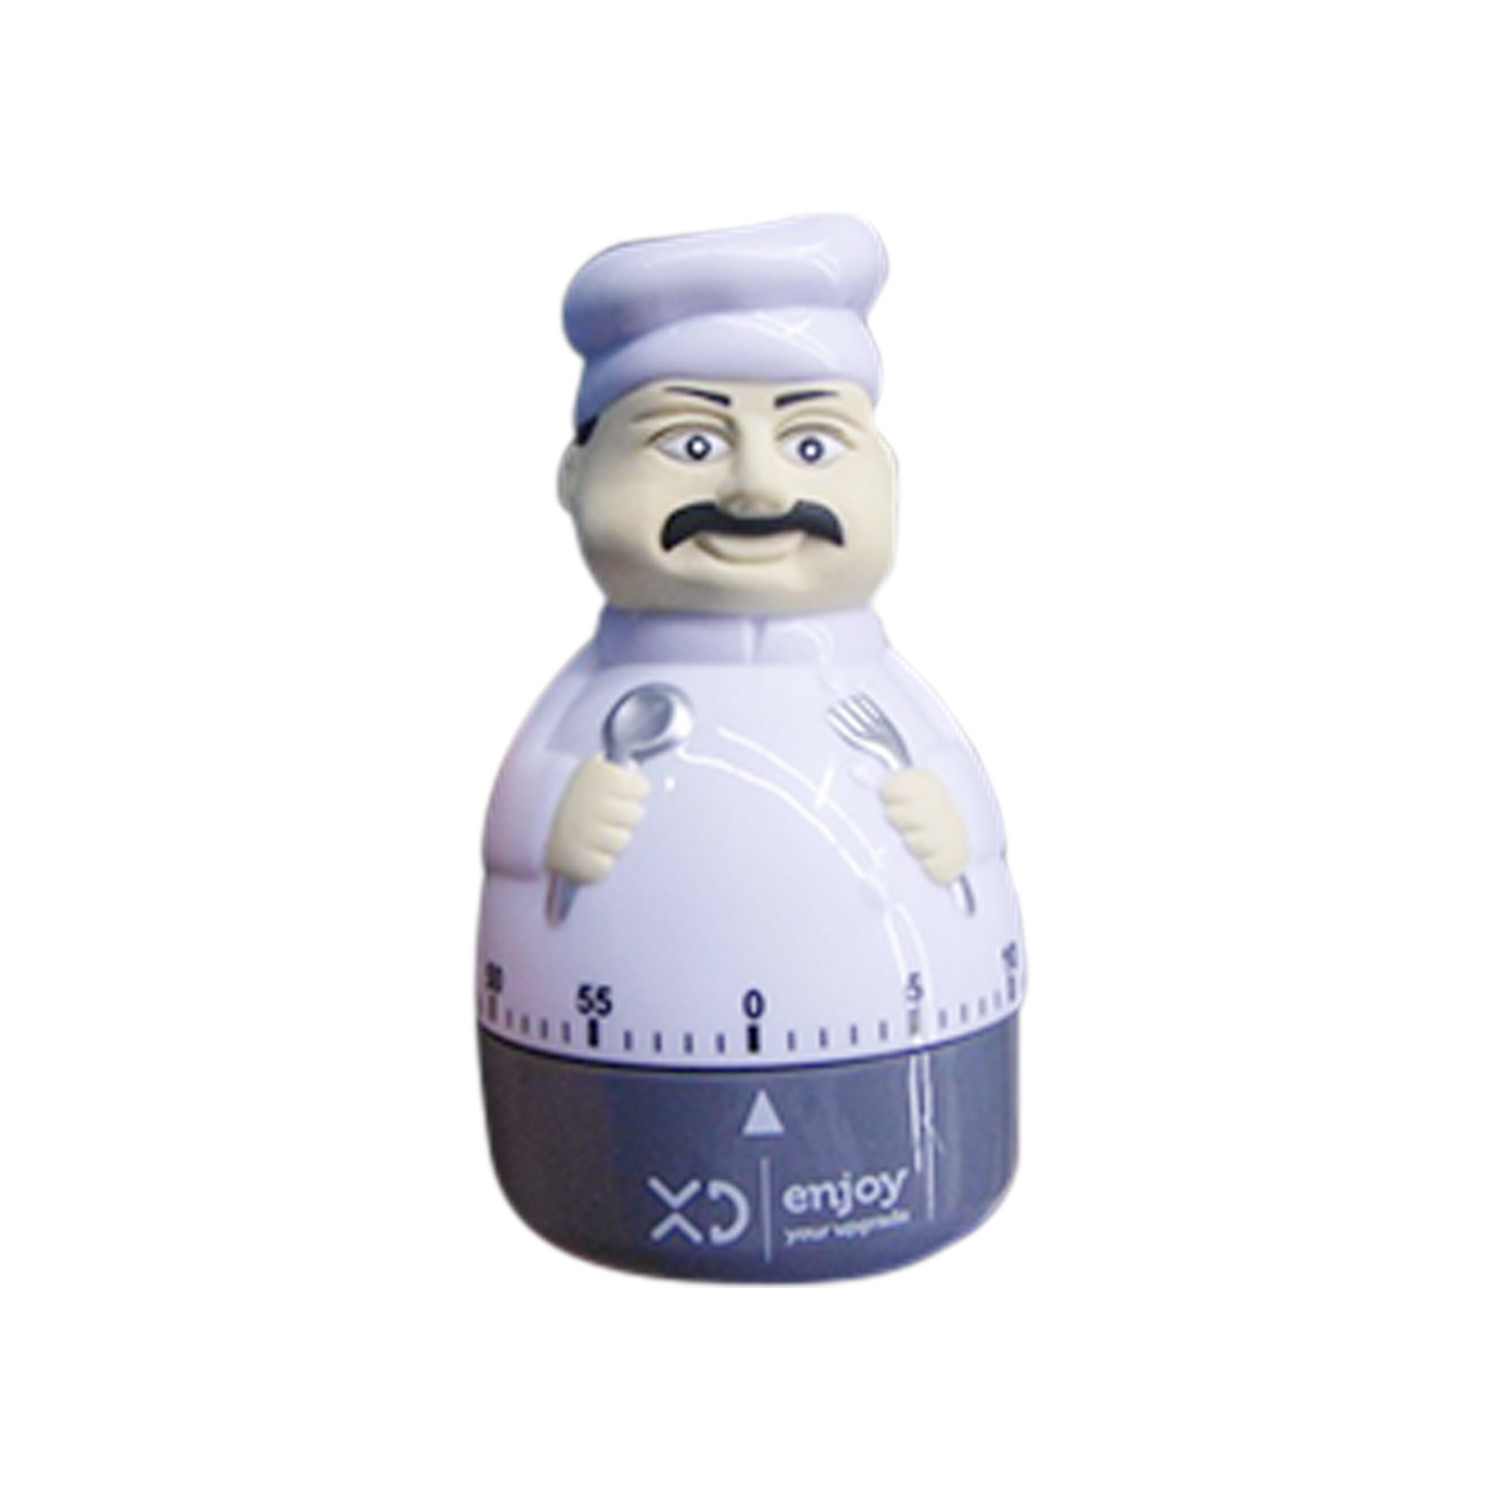 XD Enjoy XD XDMPB3041 timer da cucina Timer da cucina meccanico Blu, Bianco, Accessori Cucina in Offerta su Stay On